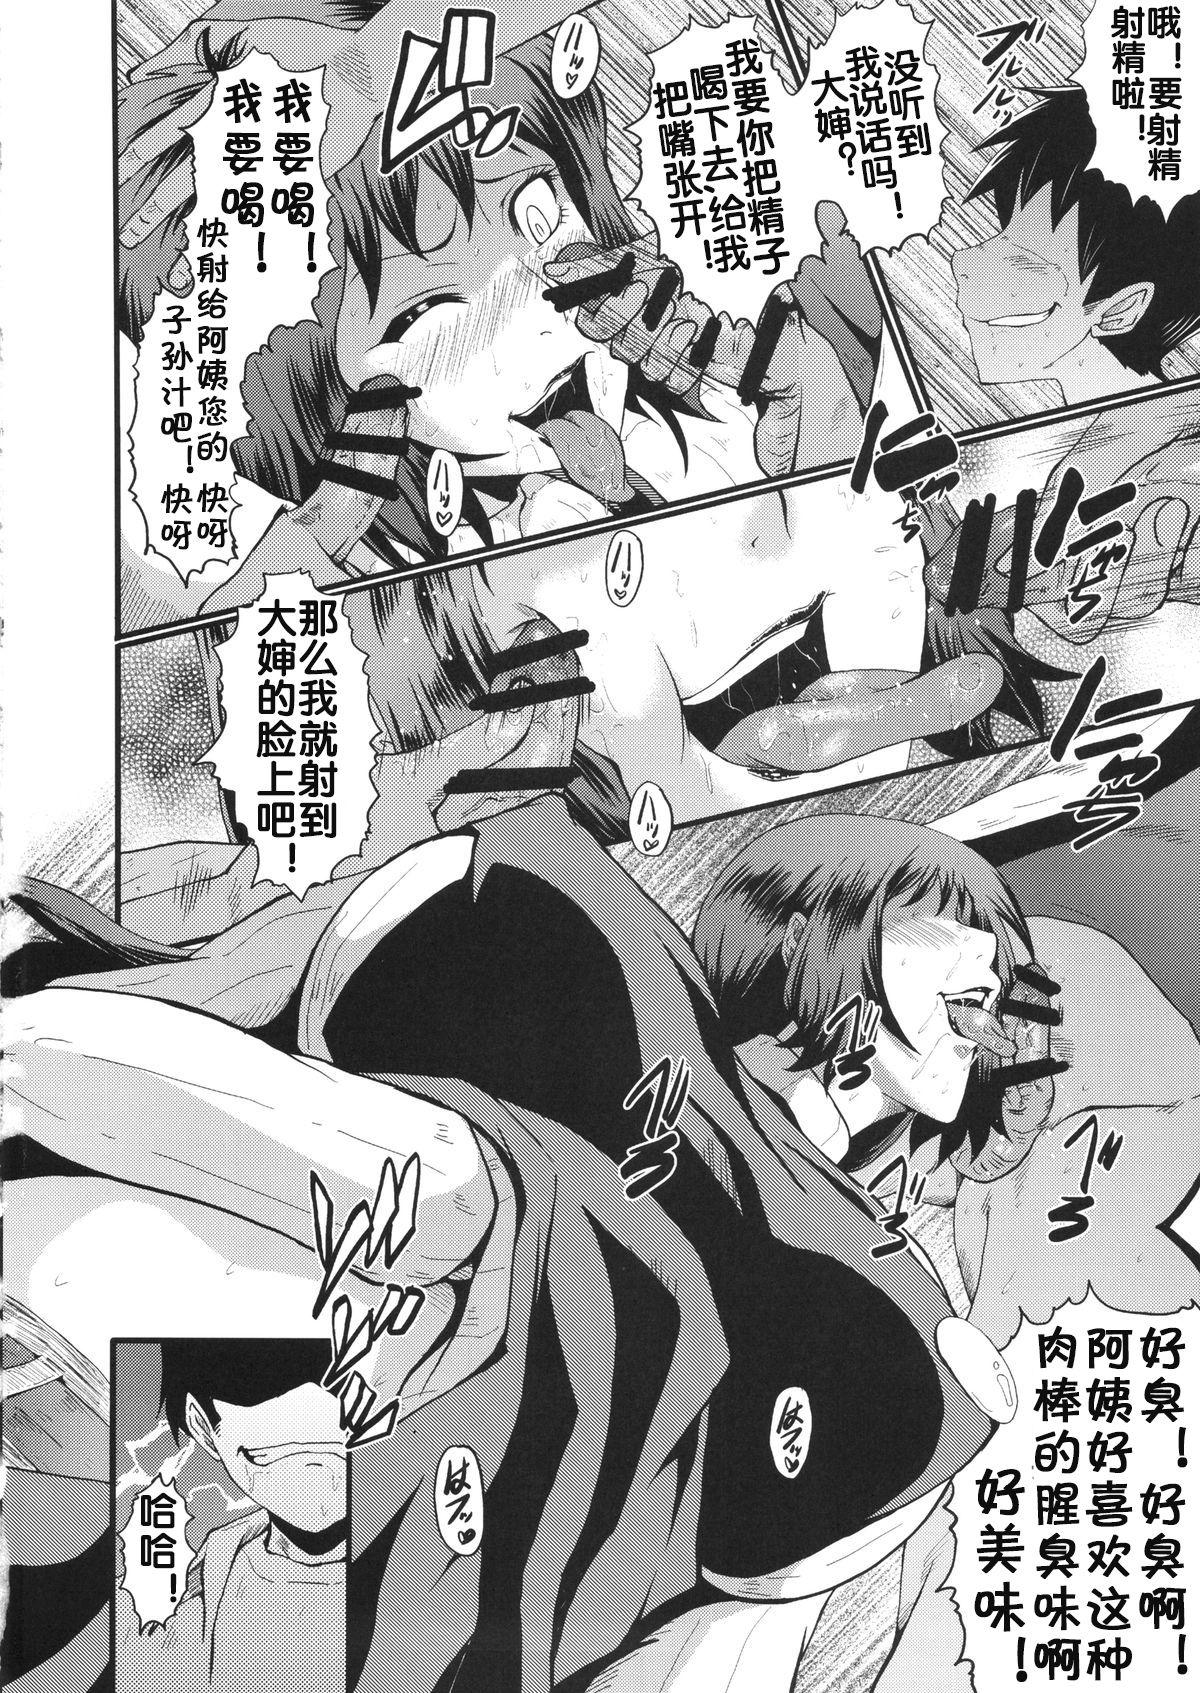 Blond Urabambi Vol. 49 Kaa-san wa Boku ga Shiranai Uchi ni Omanko ni DoHamari shite mashita. - Gundam build fighters Couple Sex - Page 9